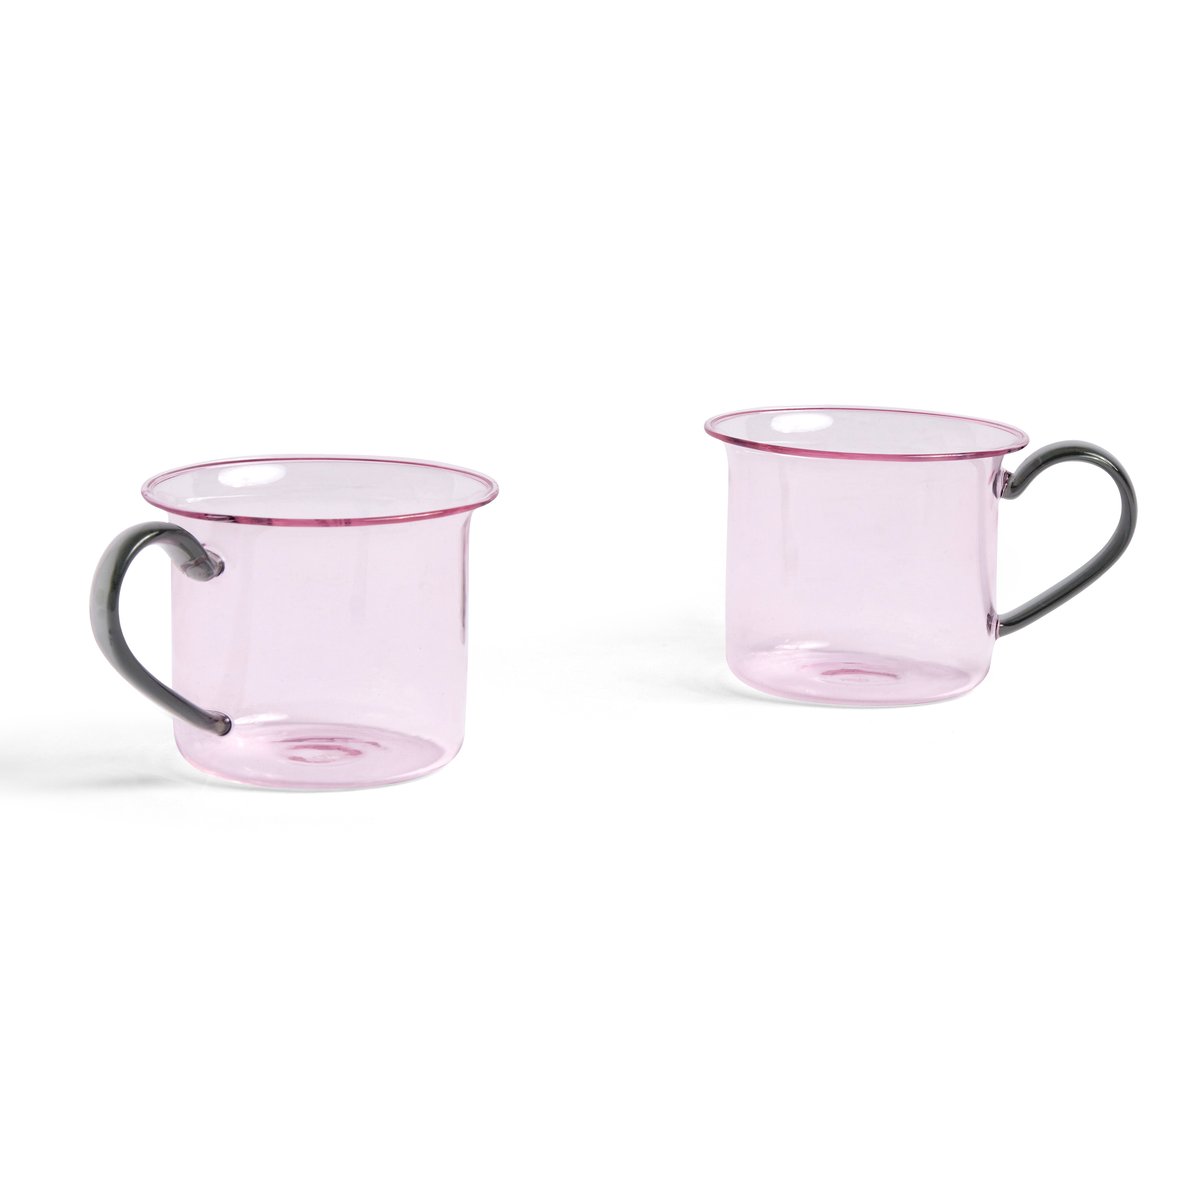 hay tasse borosilicate lot de 2 pink-grey